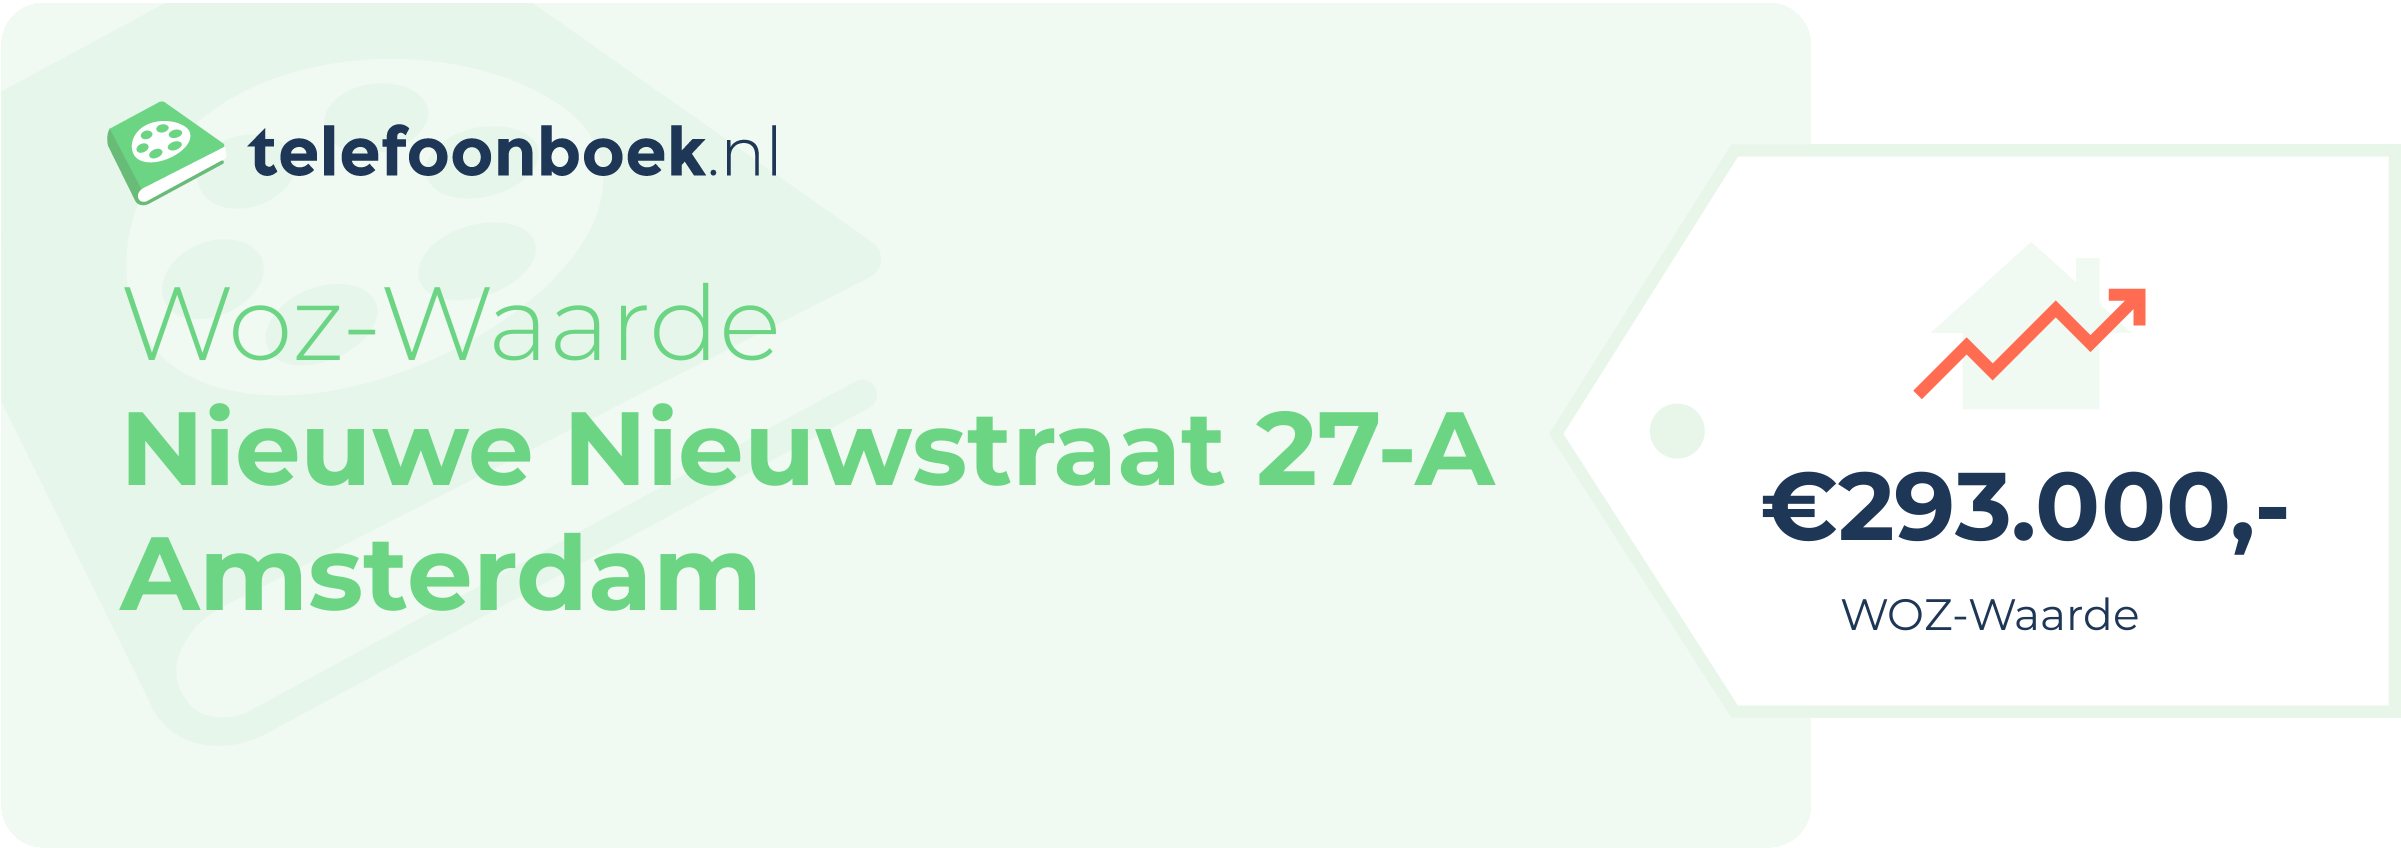 WOZ-waarde Nieuwe Nieuwstraat 27-A Amsterdam